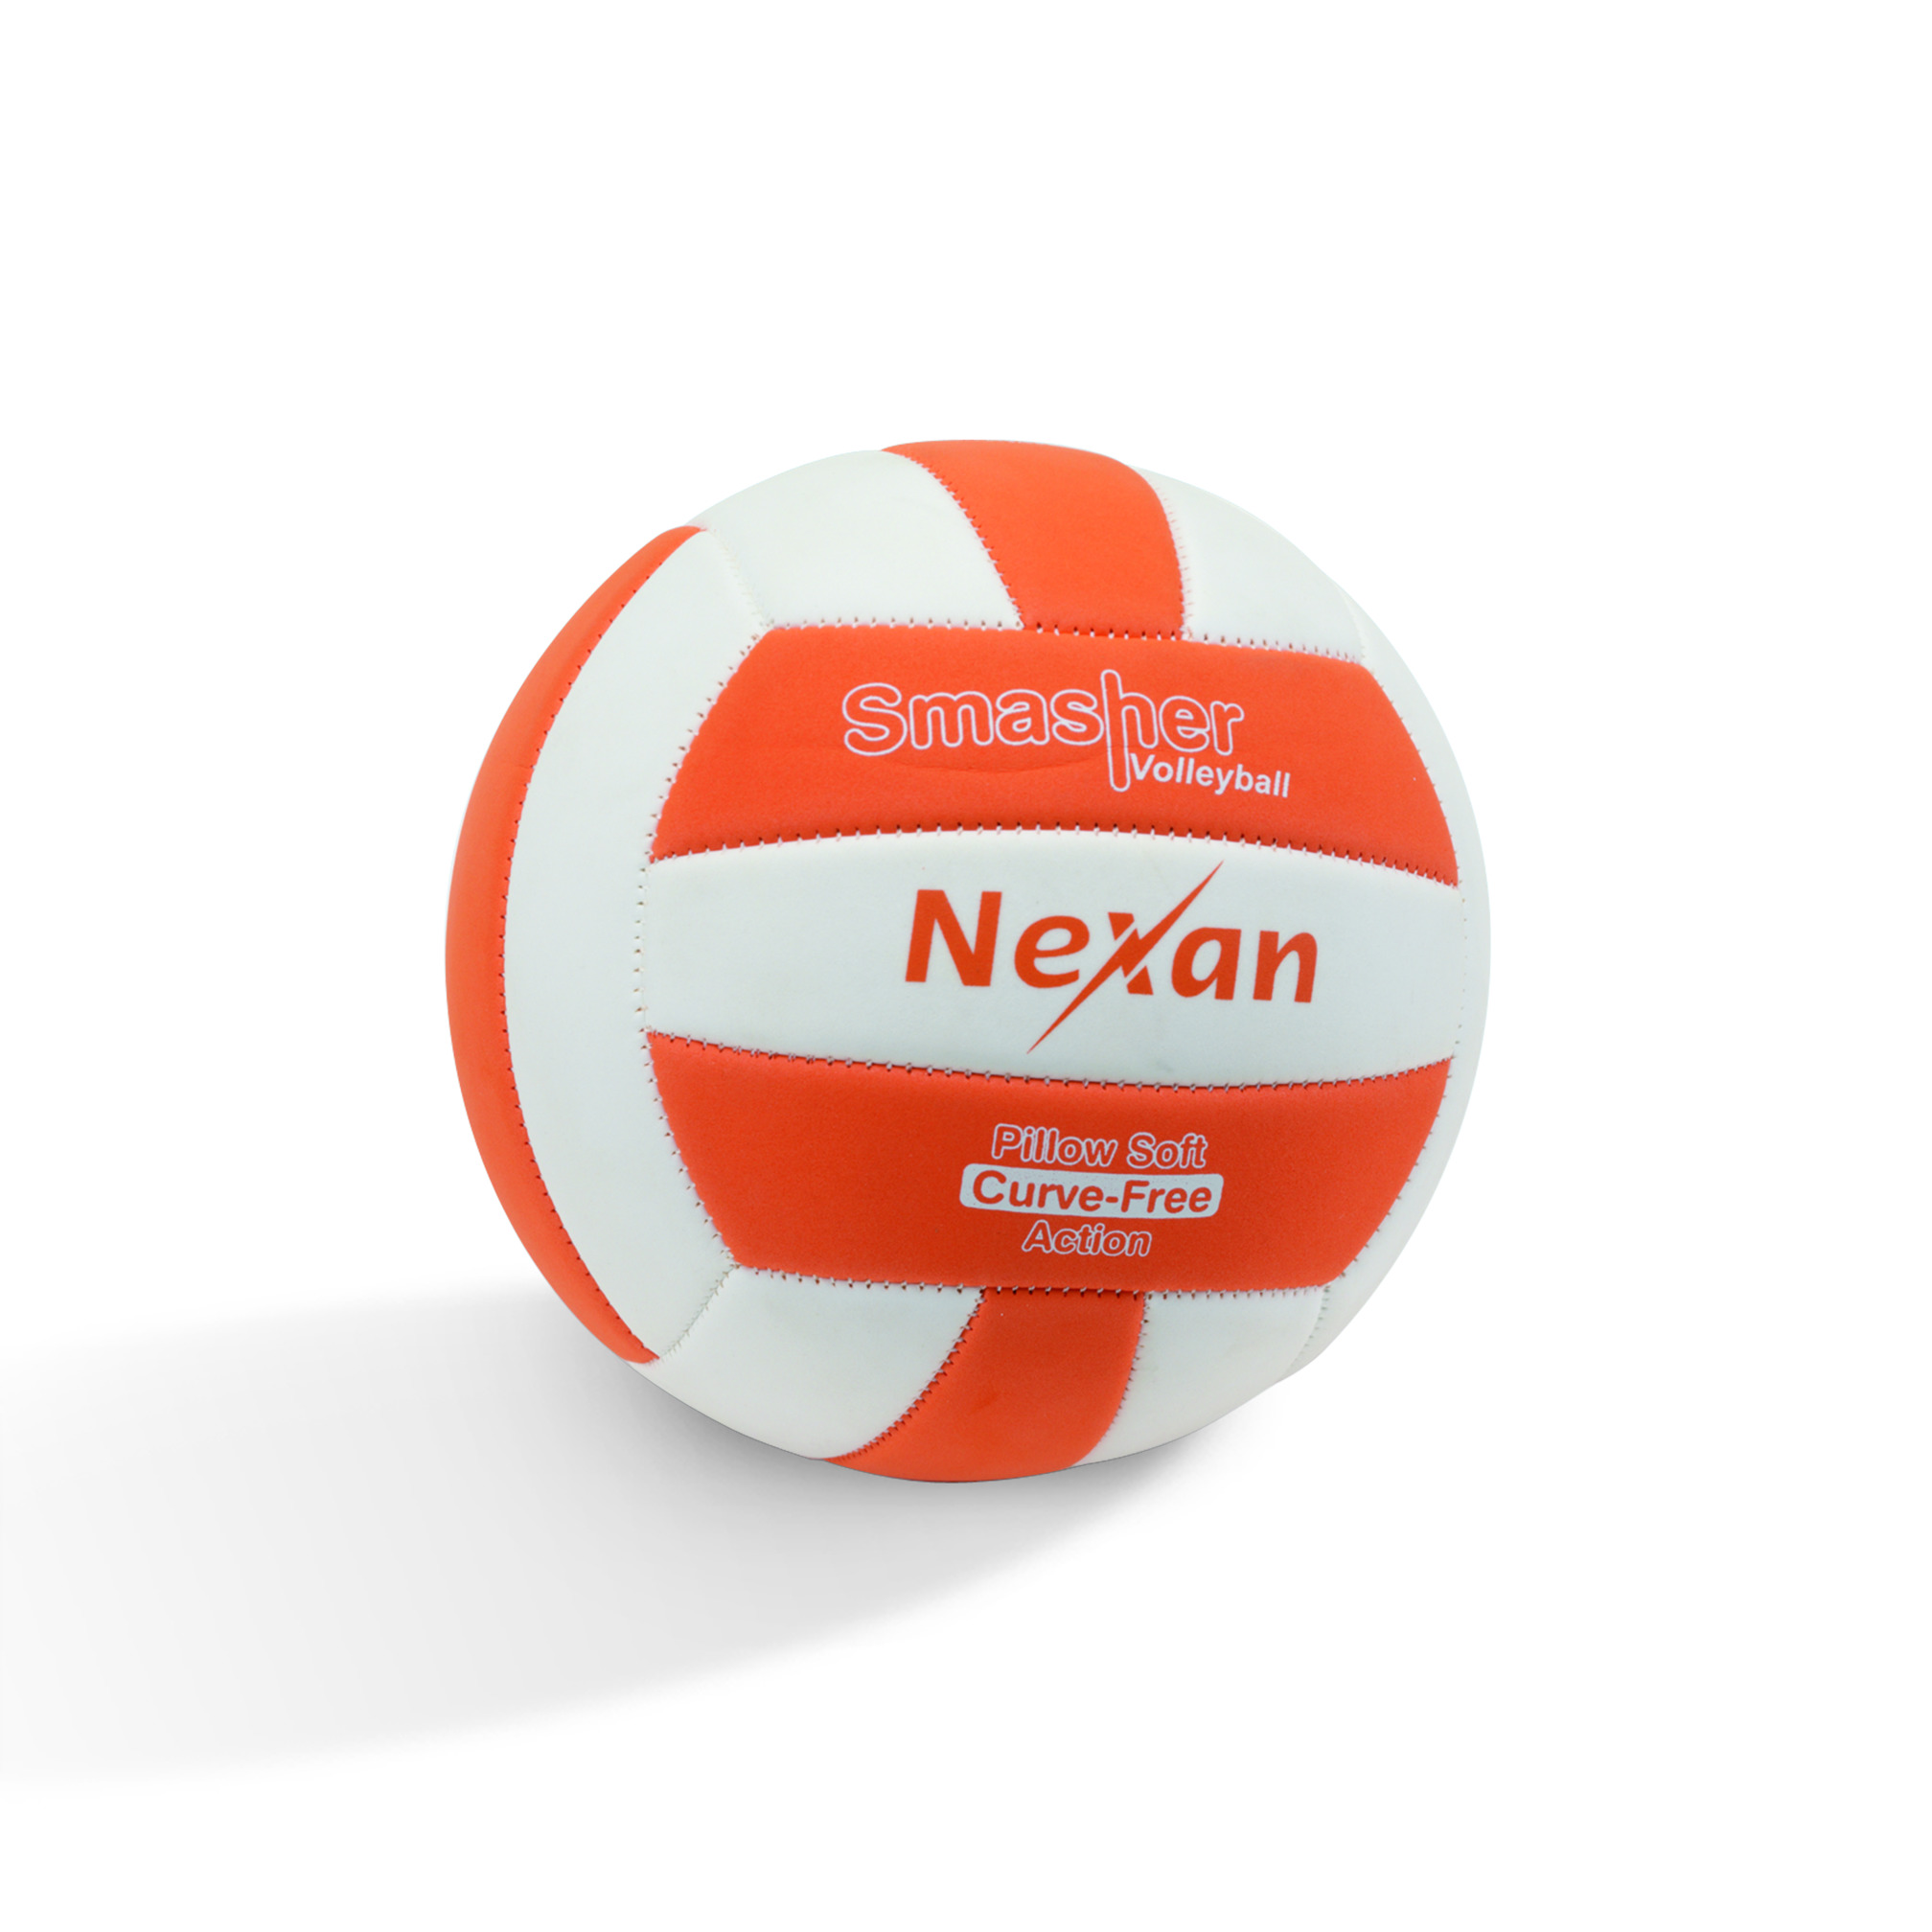 Ballon de volley "Nexan" Smasher Pillow Soft, T5